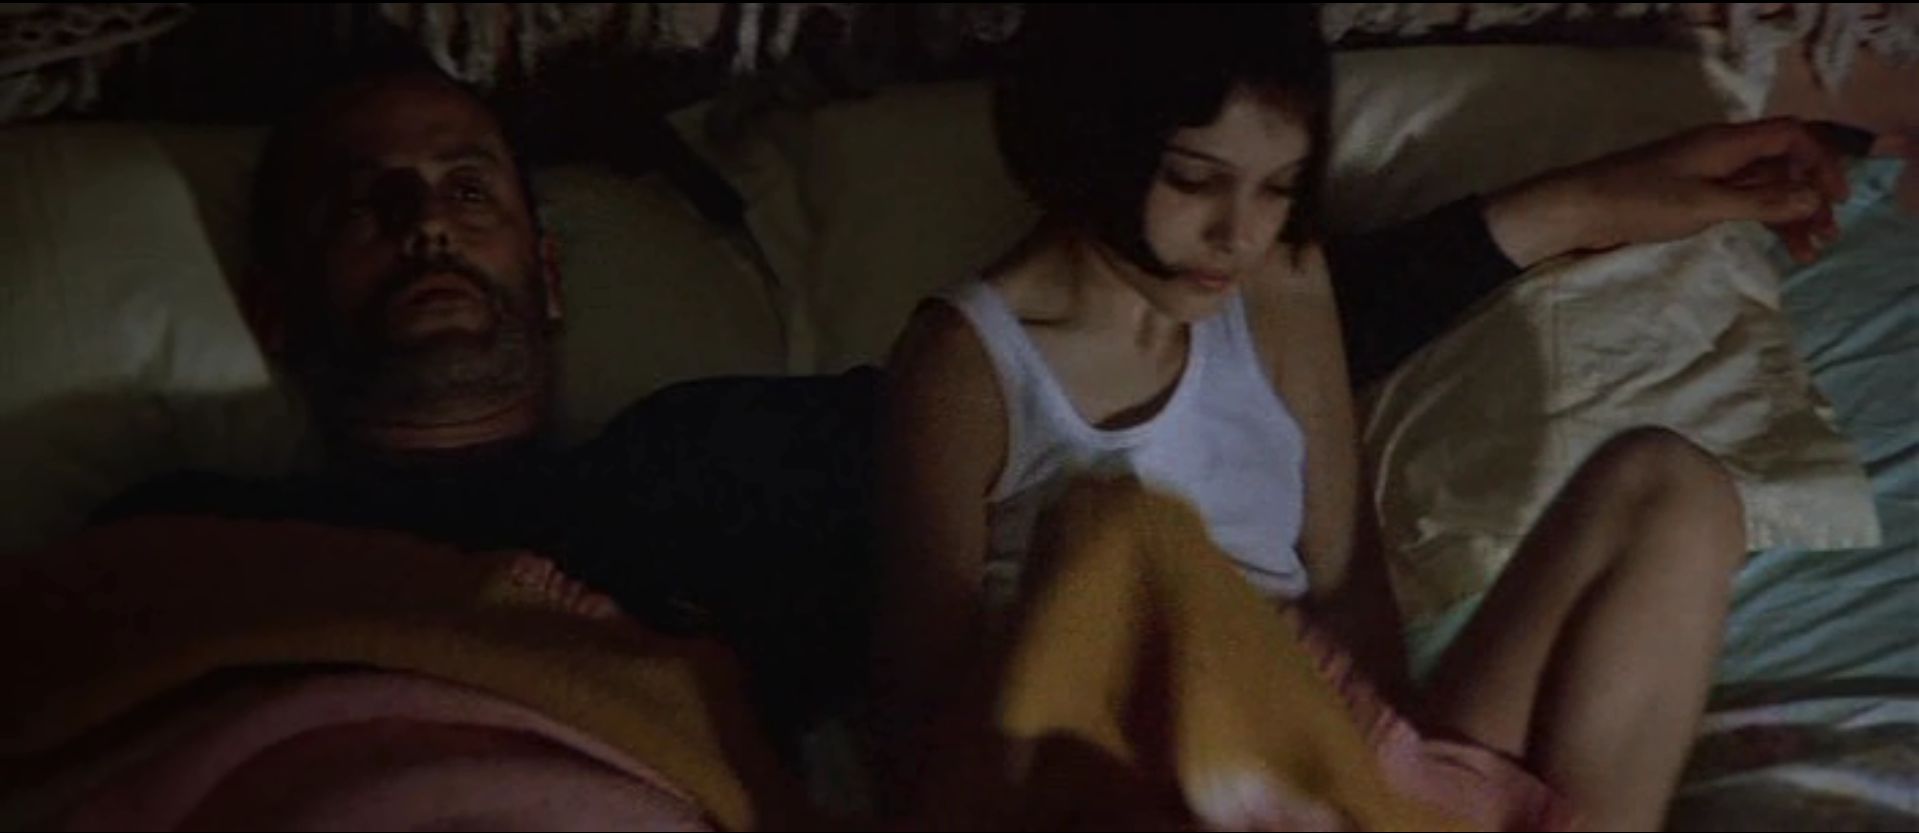 Матильда и Леон спят в одной кровати. 